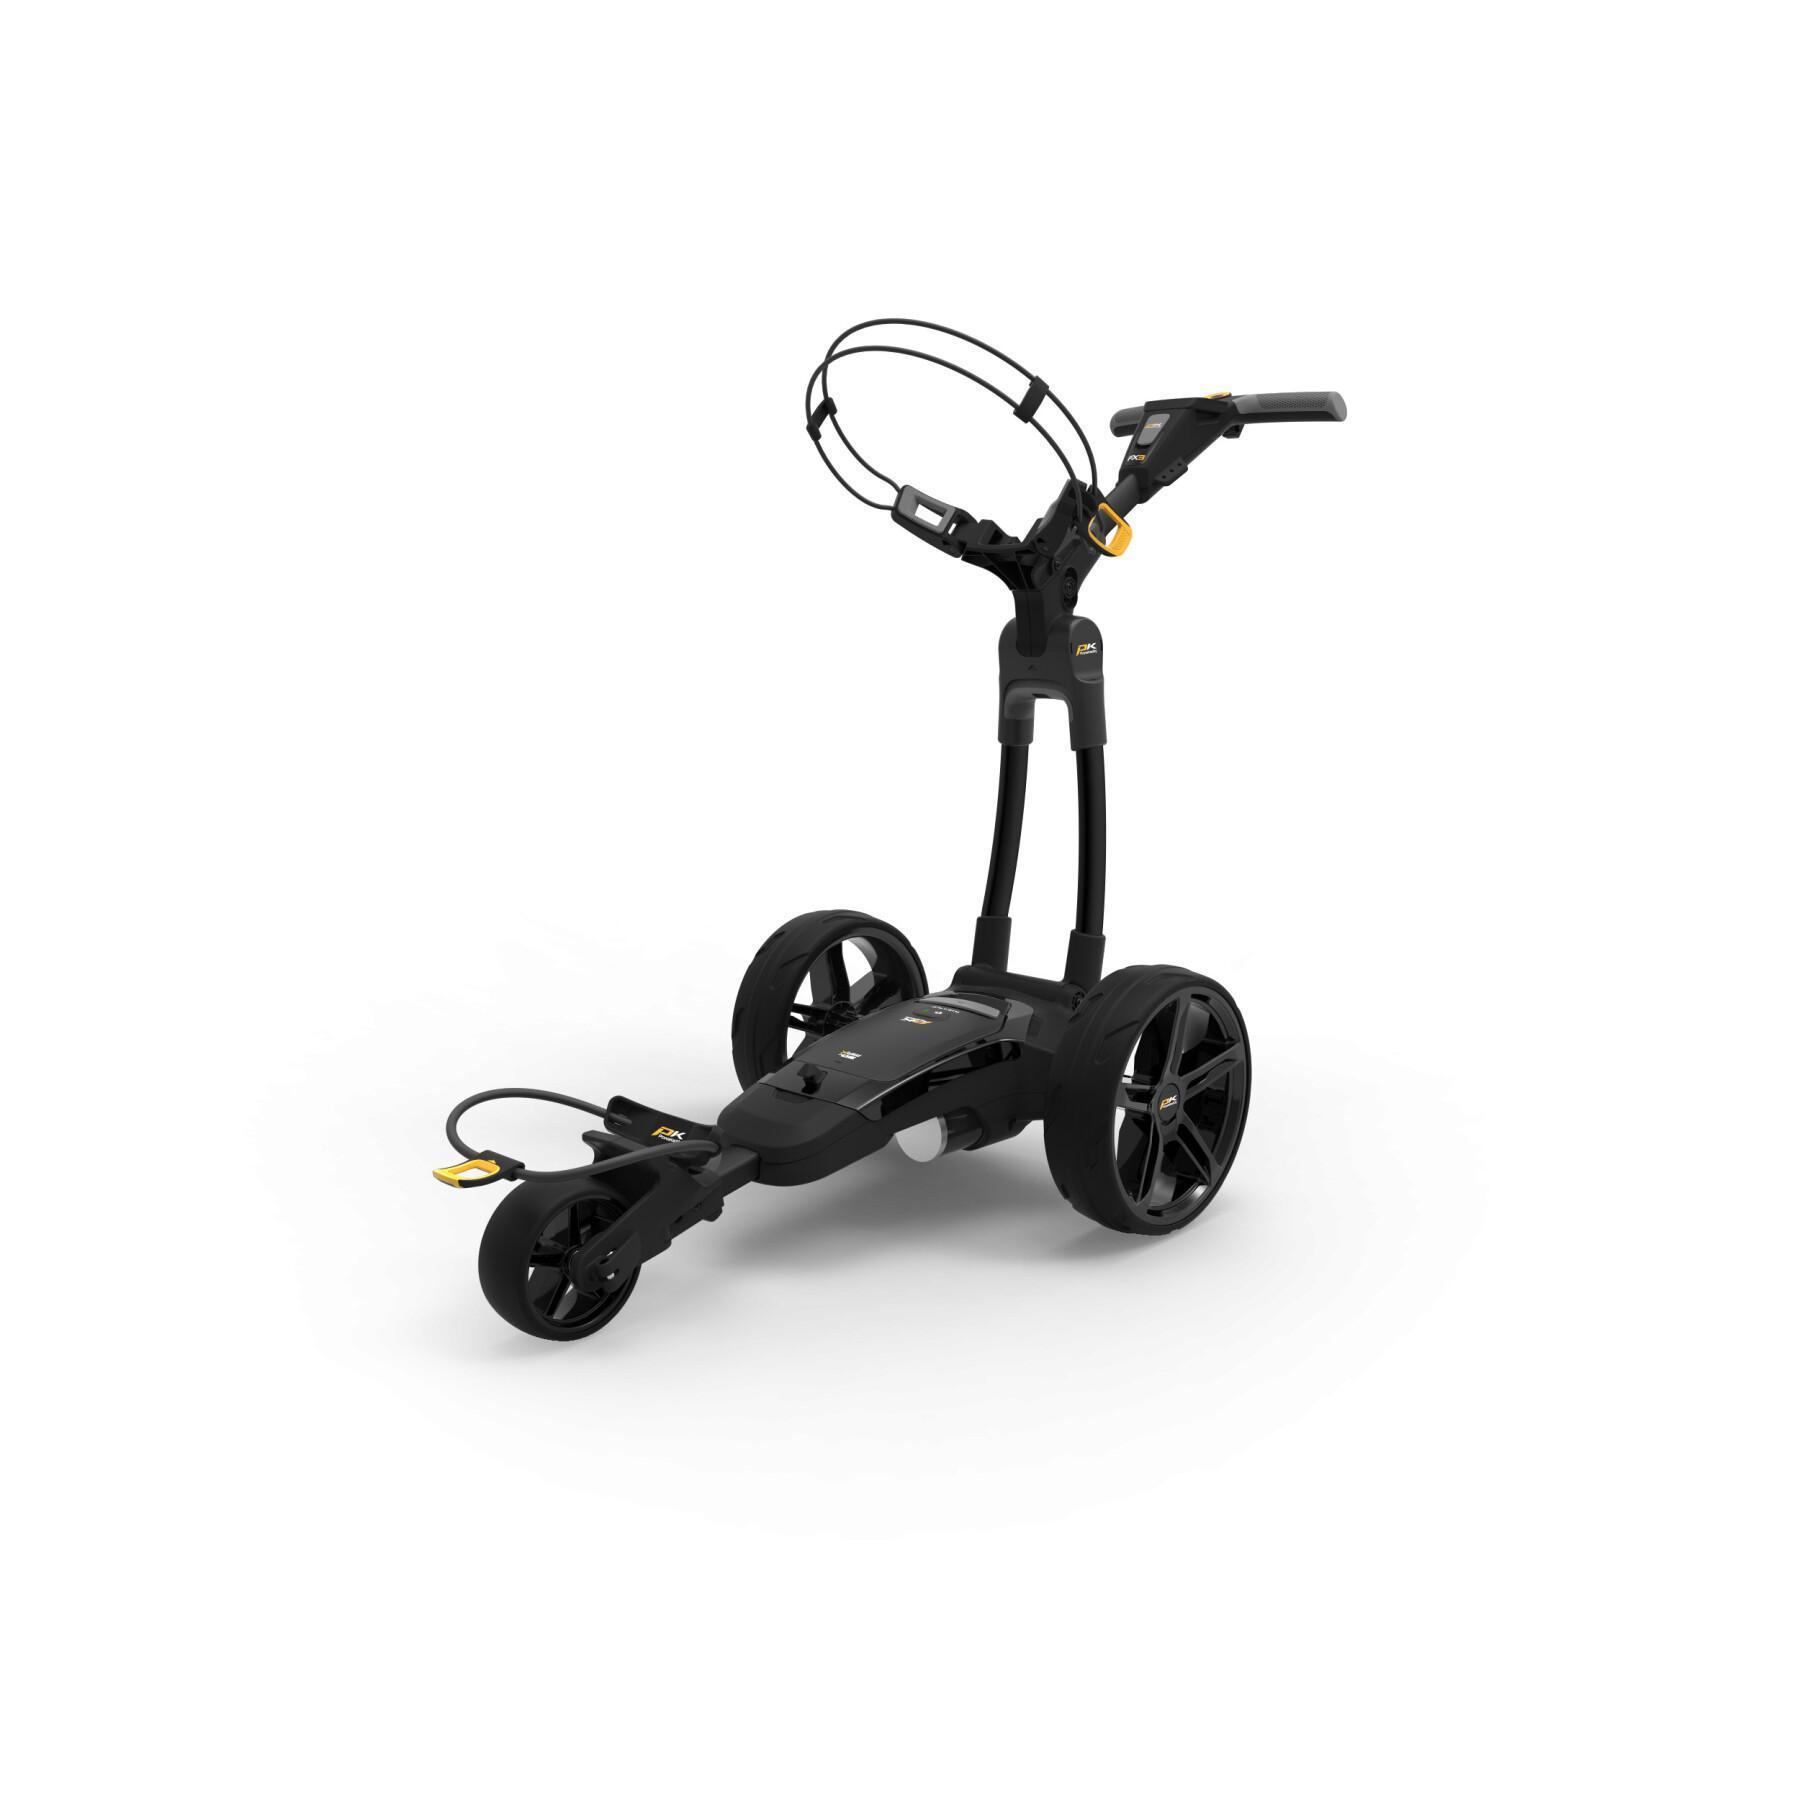 Elektryczny wózek widłowy Powakaddy FX3 EBS STD